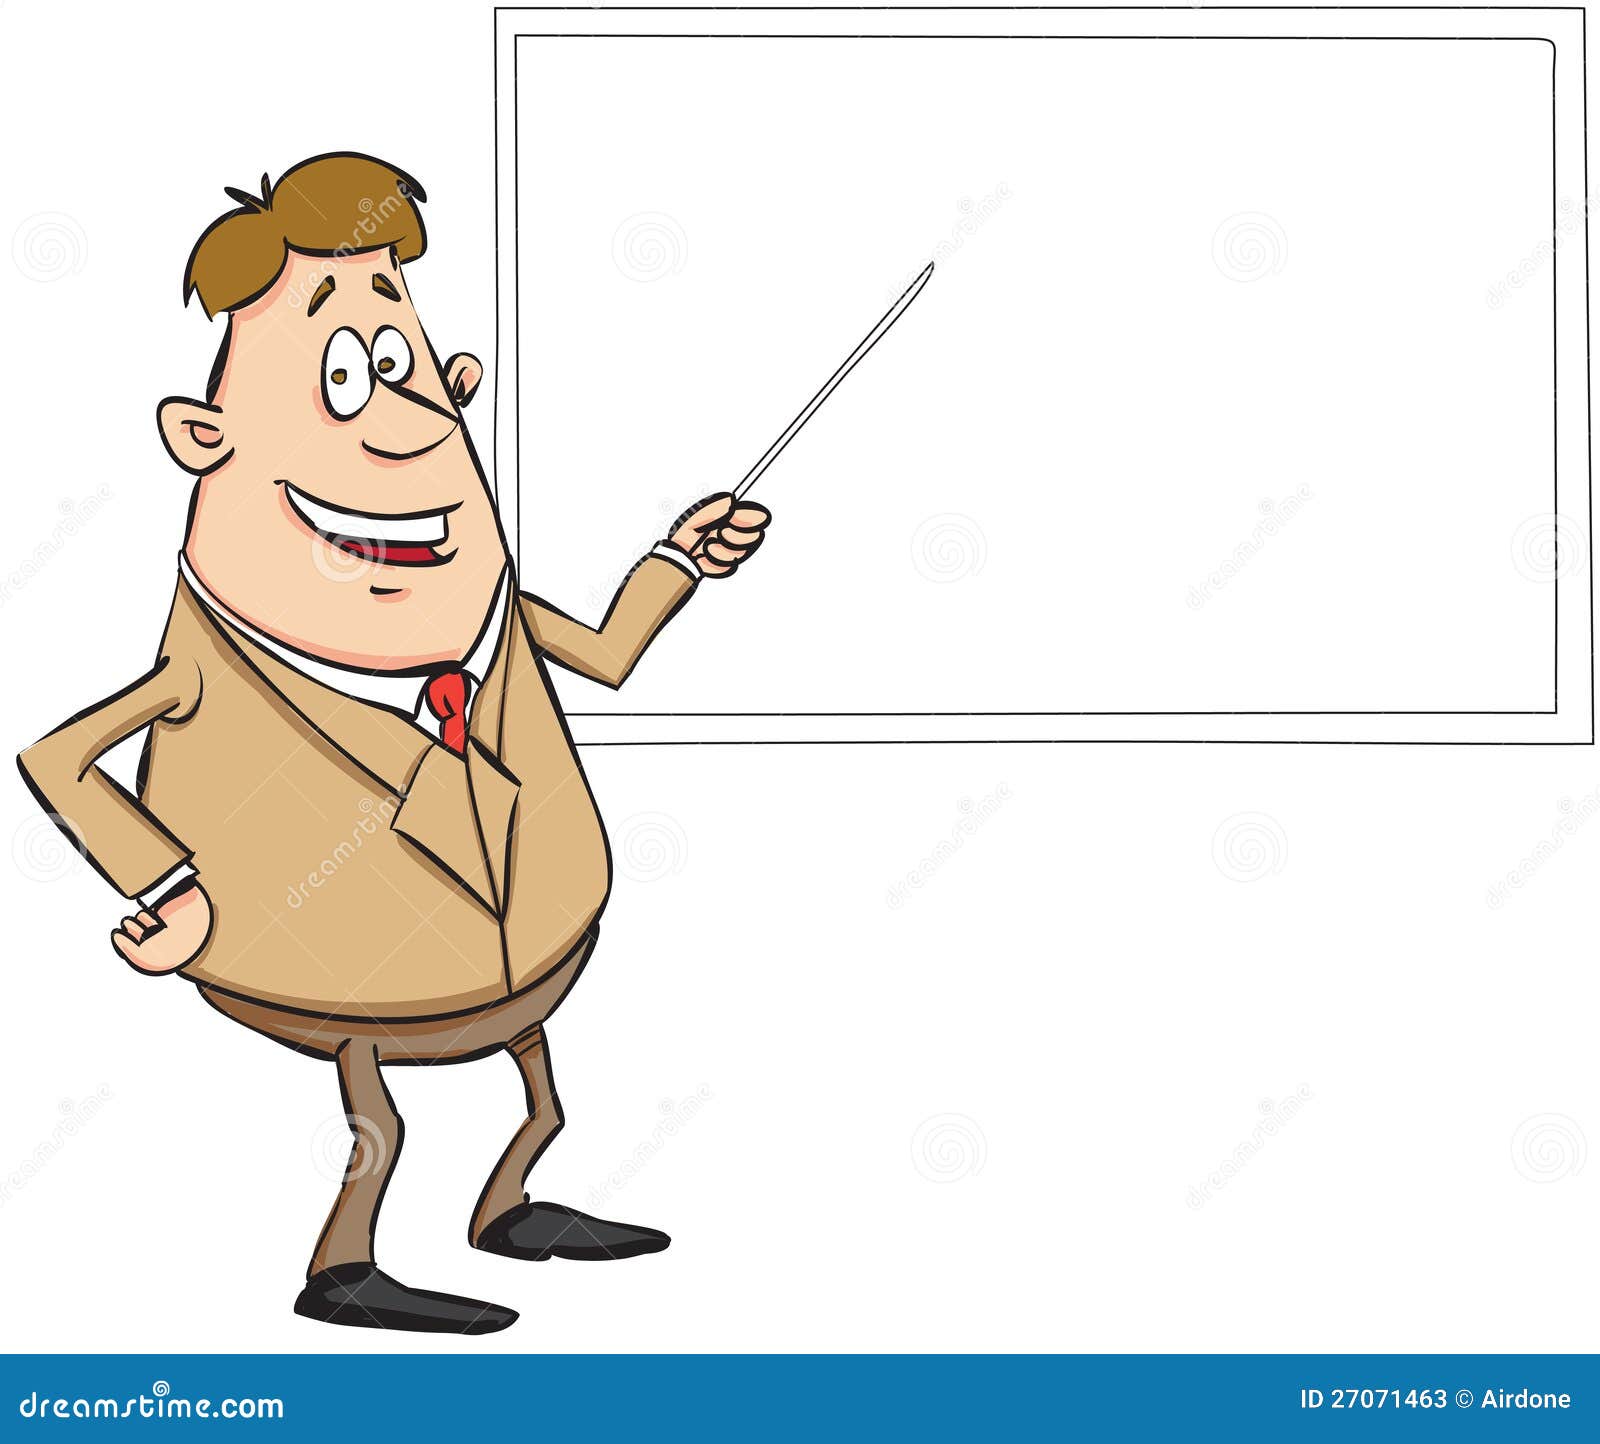 Teacher in cartoon style stock vector. Illustration of stick - 27071463